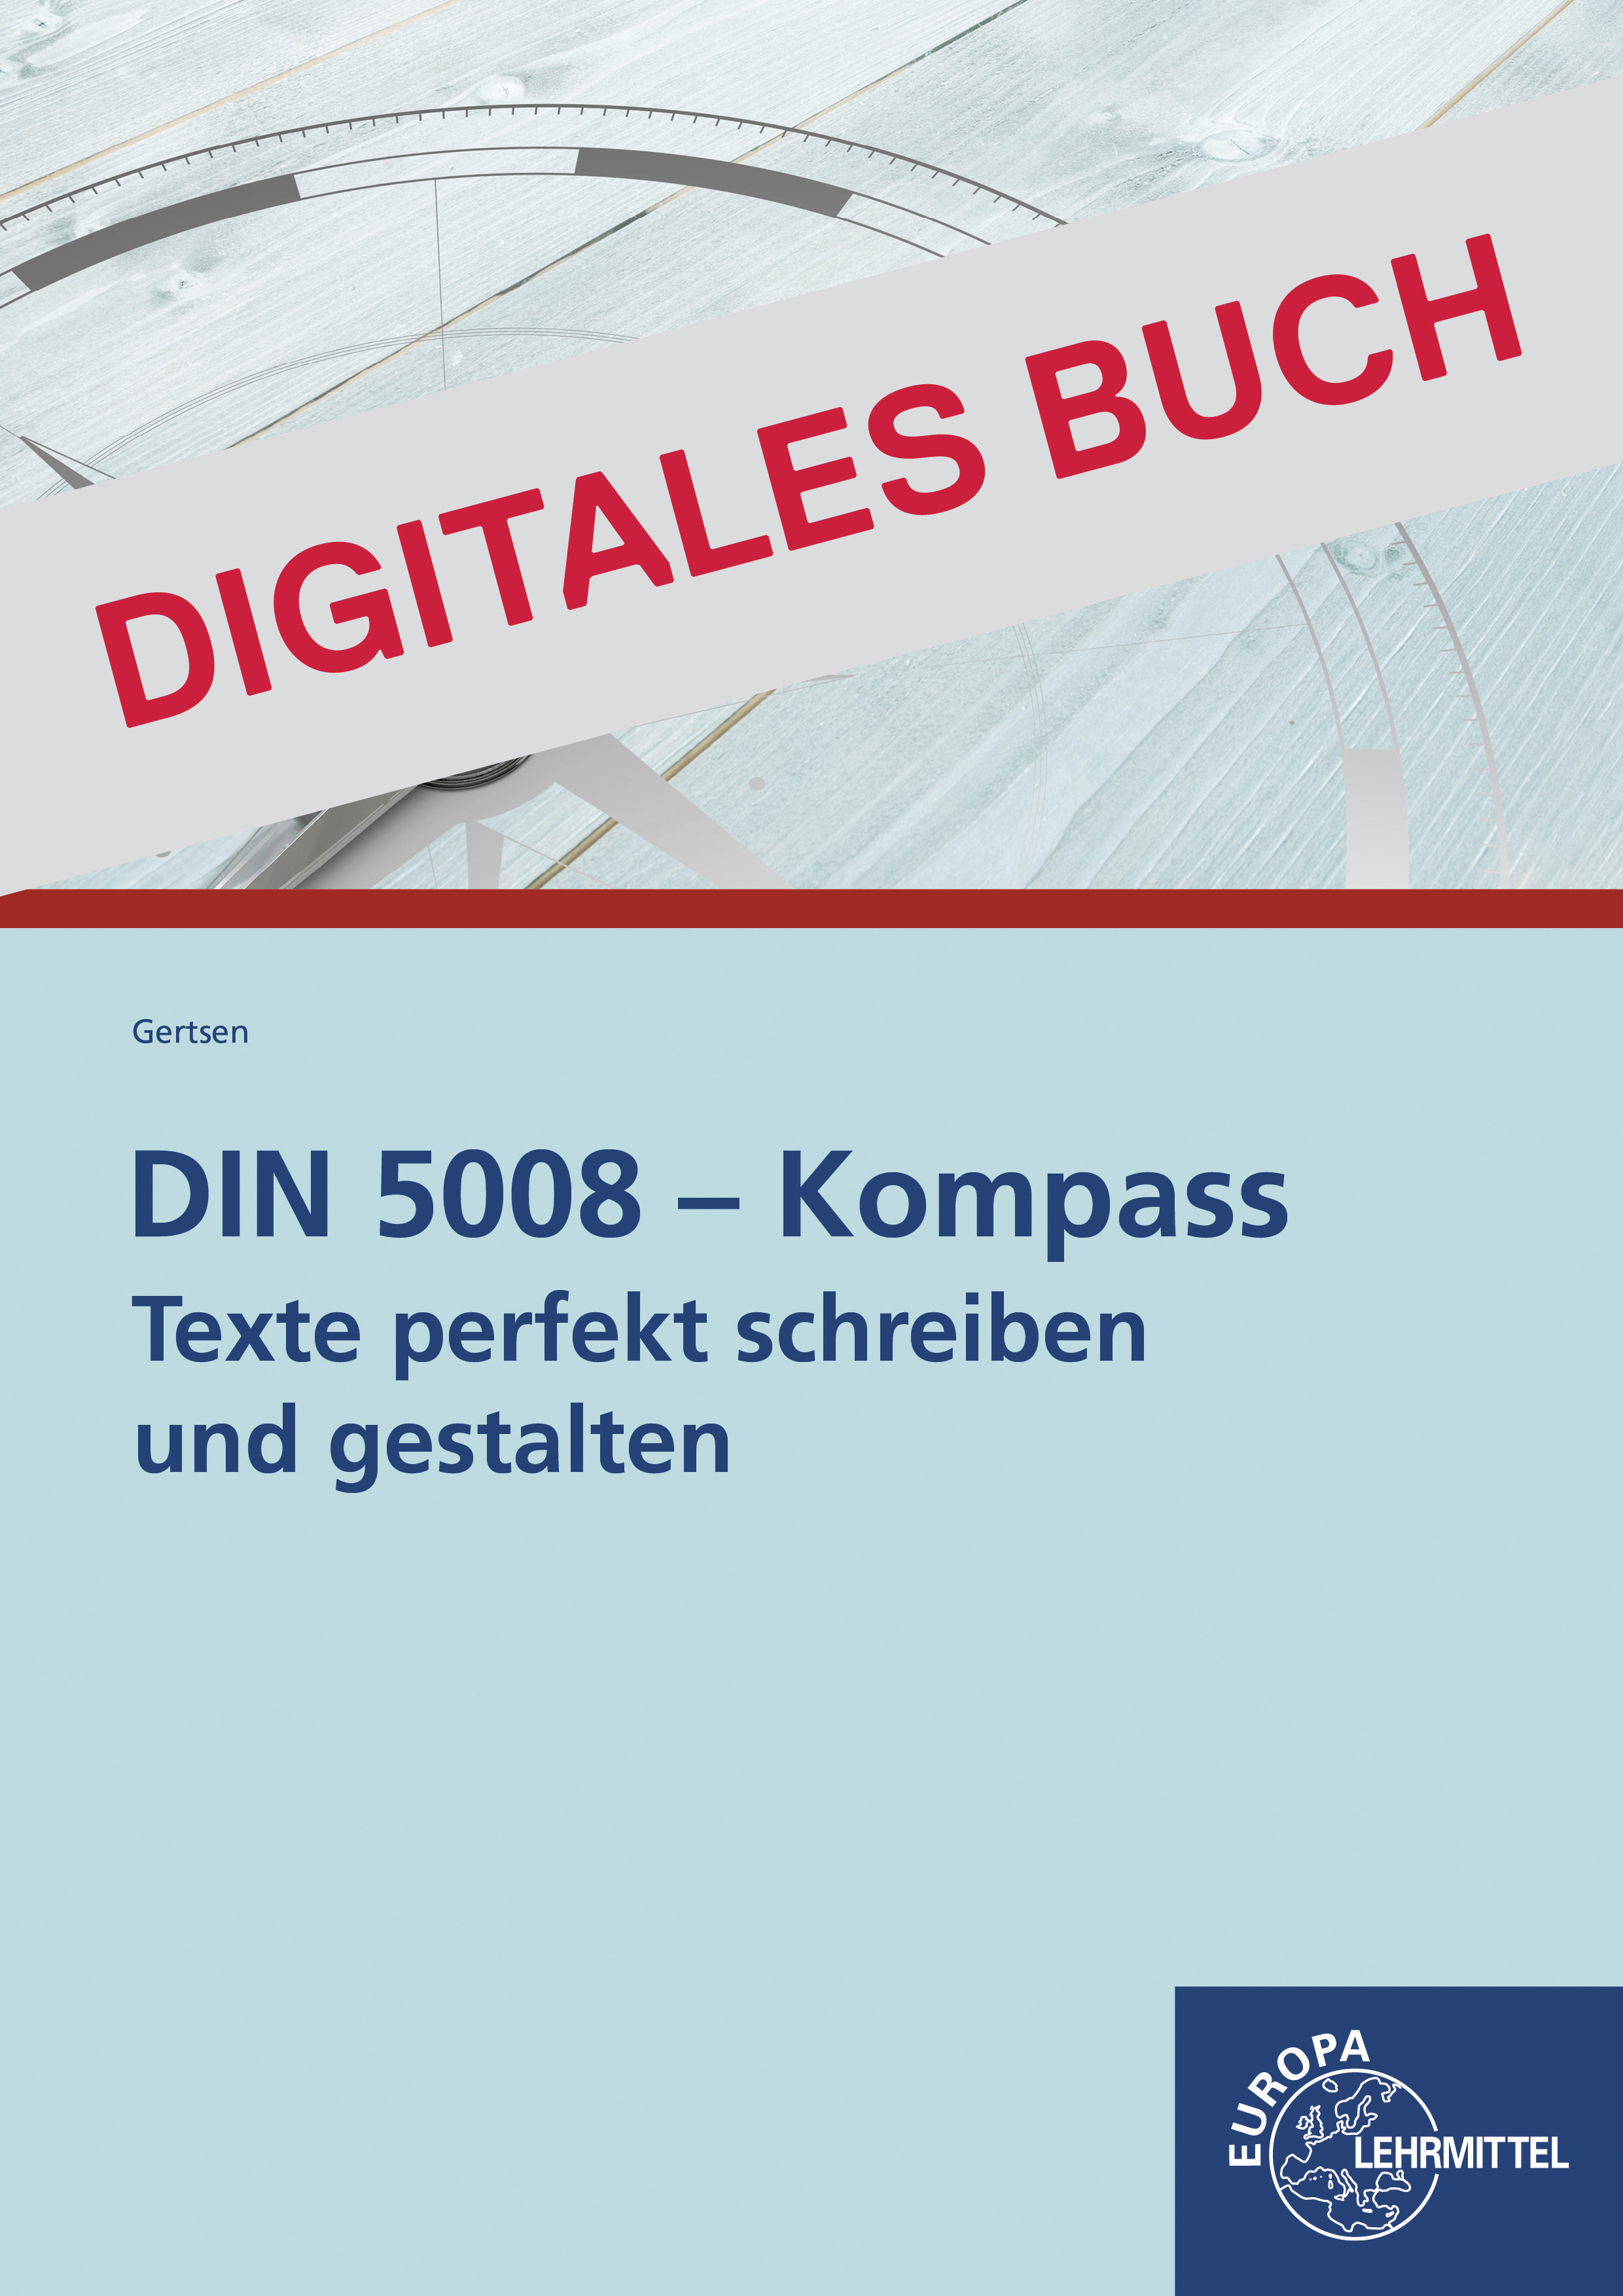 DIN 5008 - Kompass, Texte und Briefe professionell gestalten - Digitales Buch